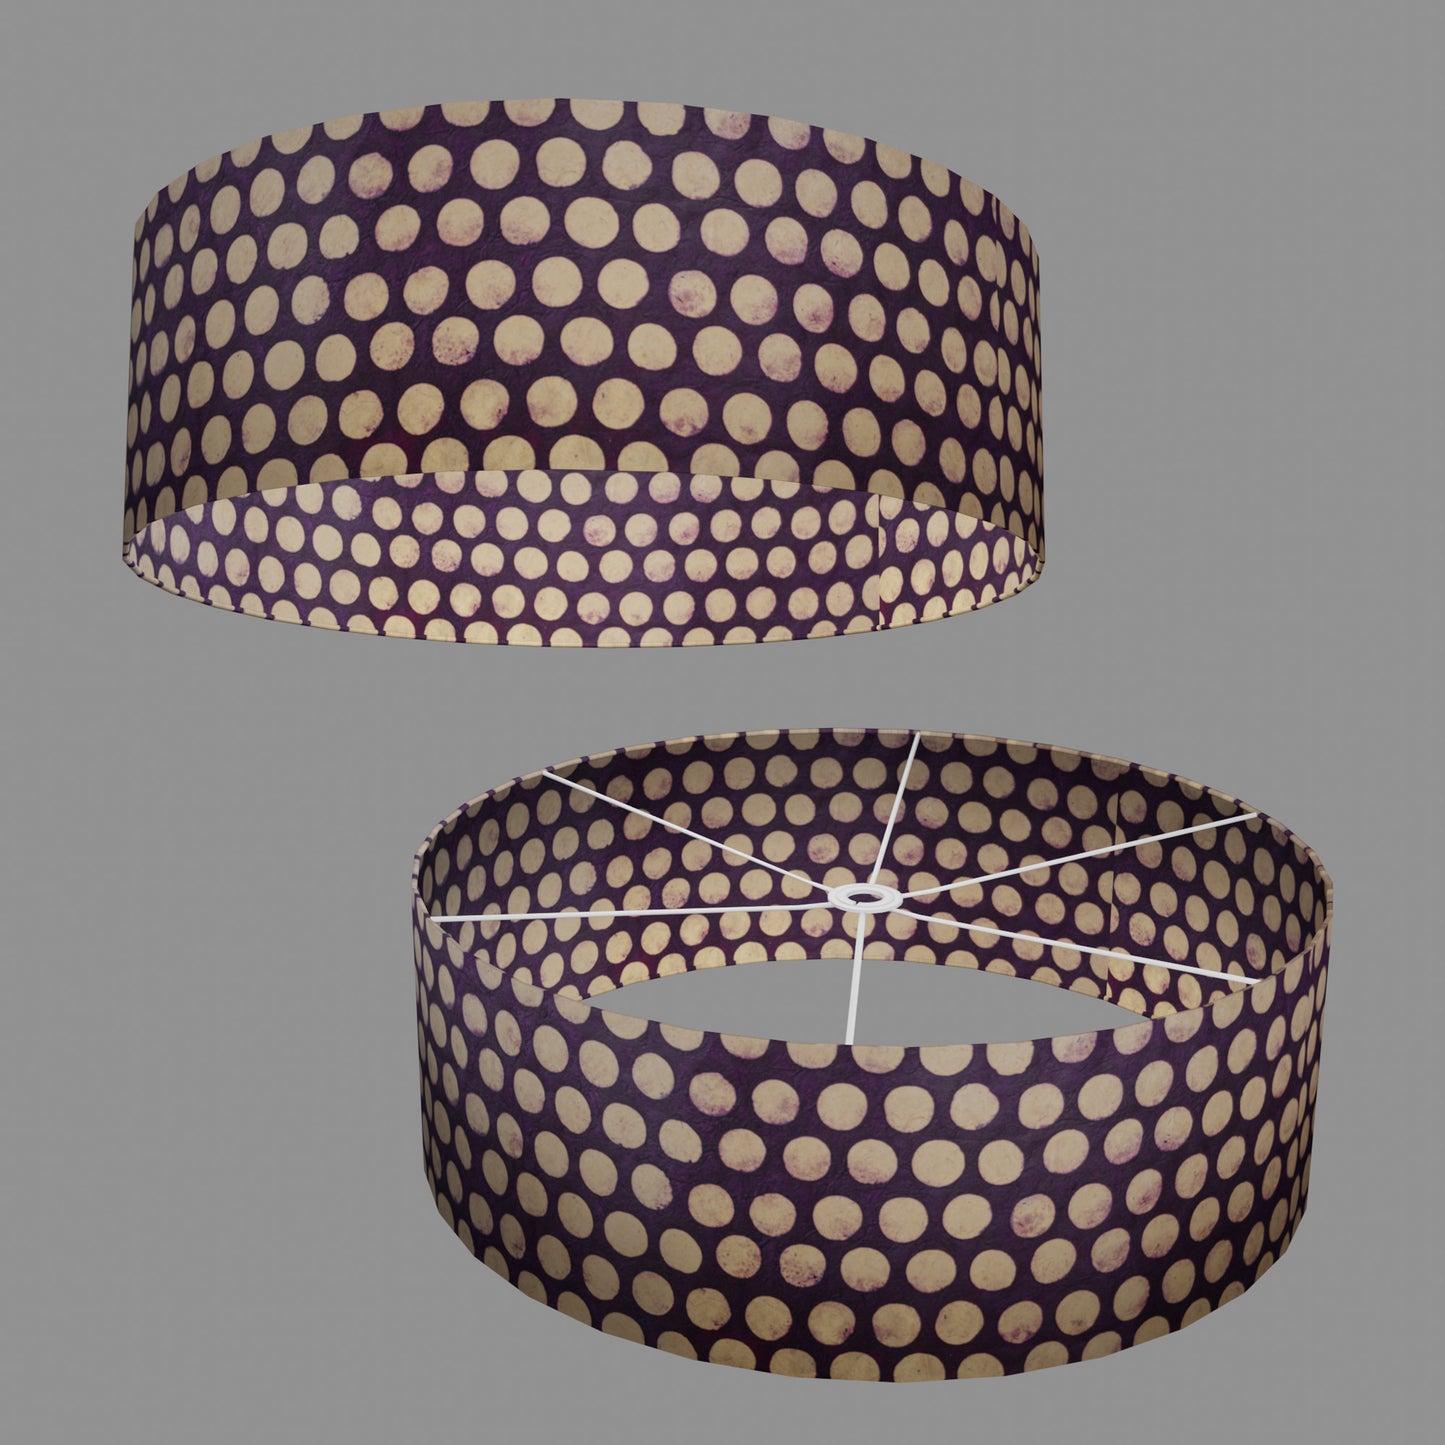 Drum Lamp Shade - P79 - Batik Dots on Purple, 60cm(d) x 20cm(h)